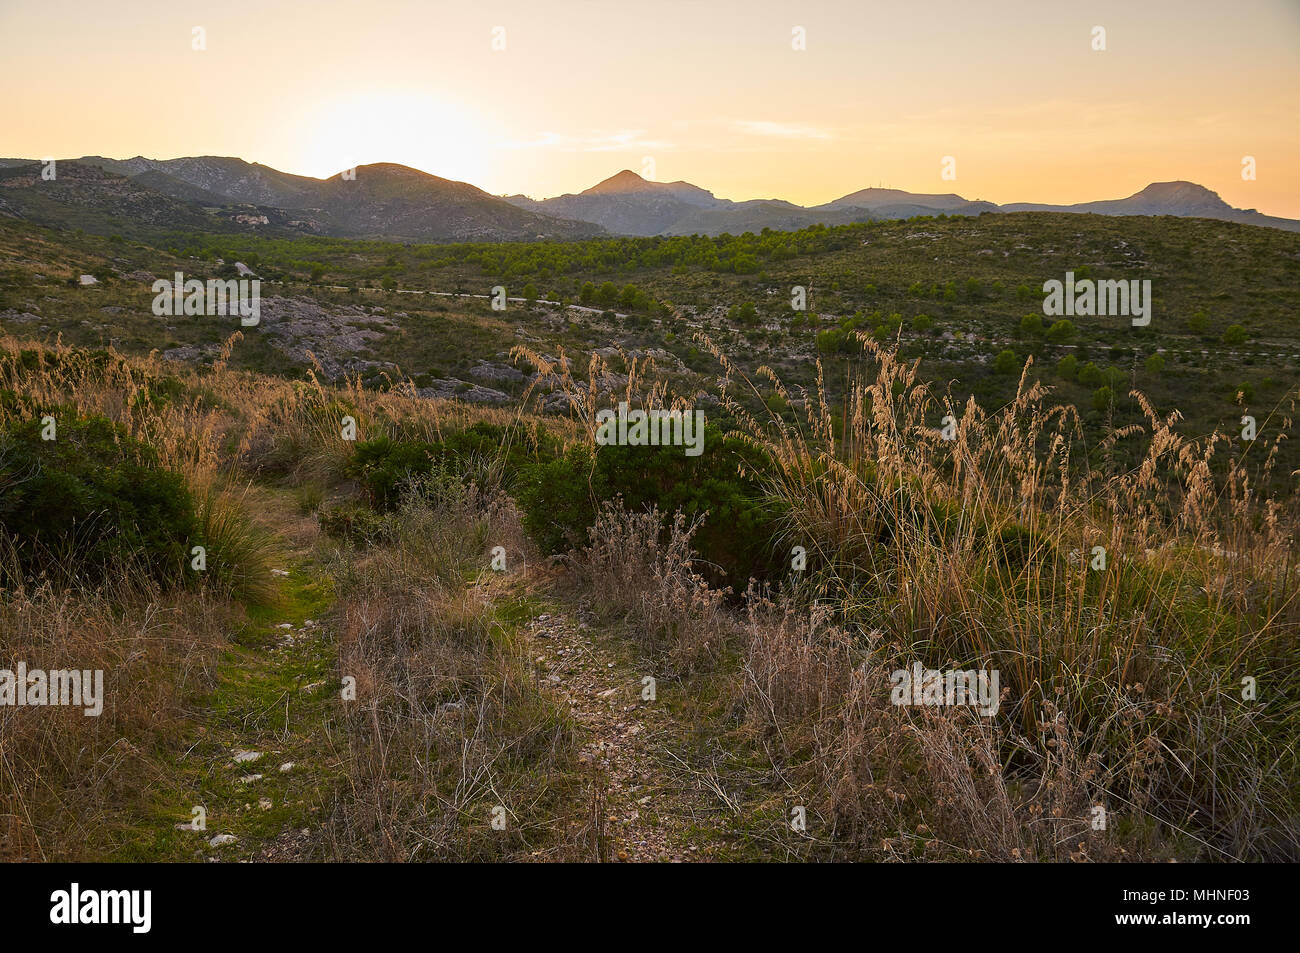 Coucher de soleil sur le sentier près de l'agrotourisme de sa Duaia avec vue panoramique sur les montagnes d'Artà (Majorque, Iles Baléares, Espagne) Banque D'Images